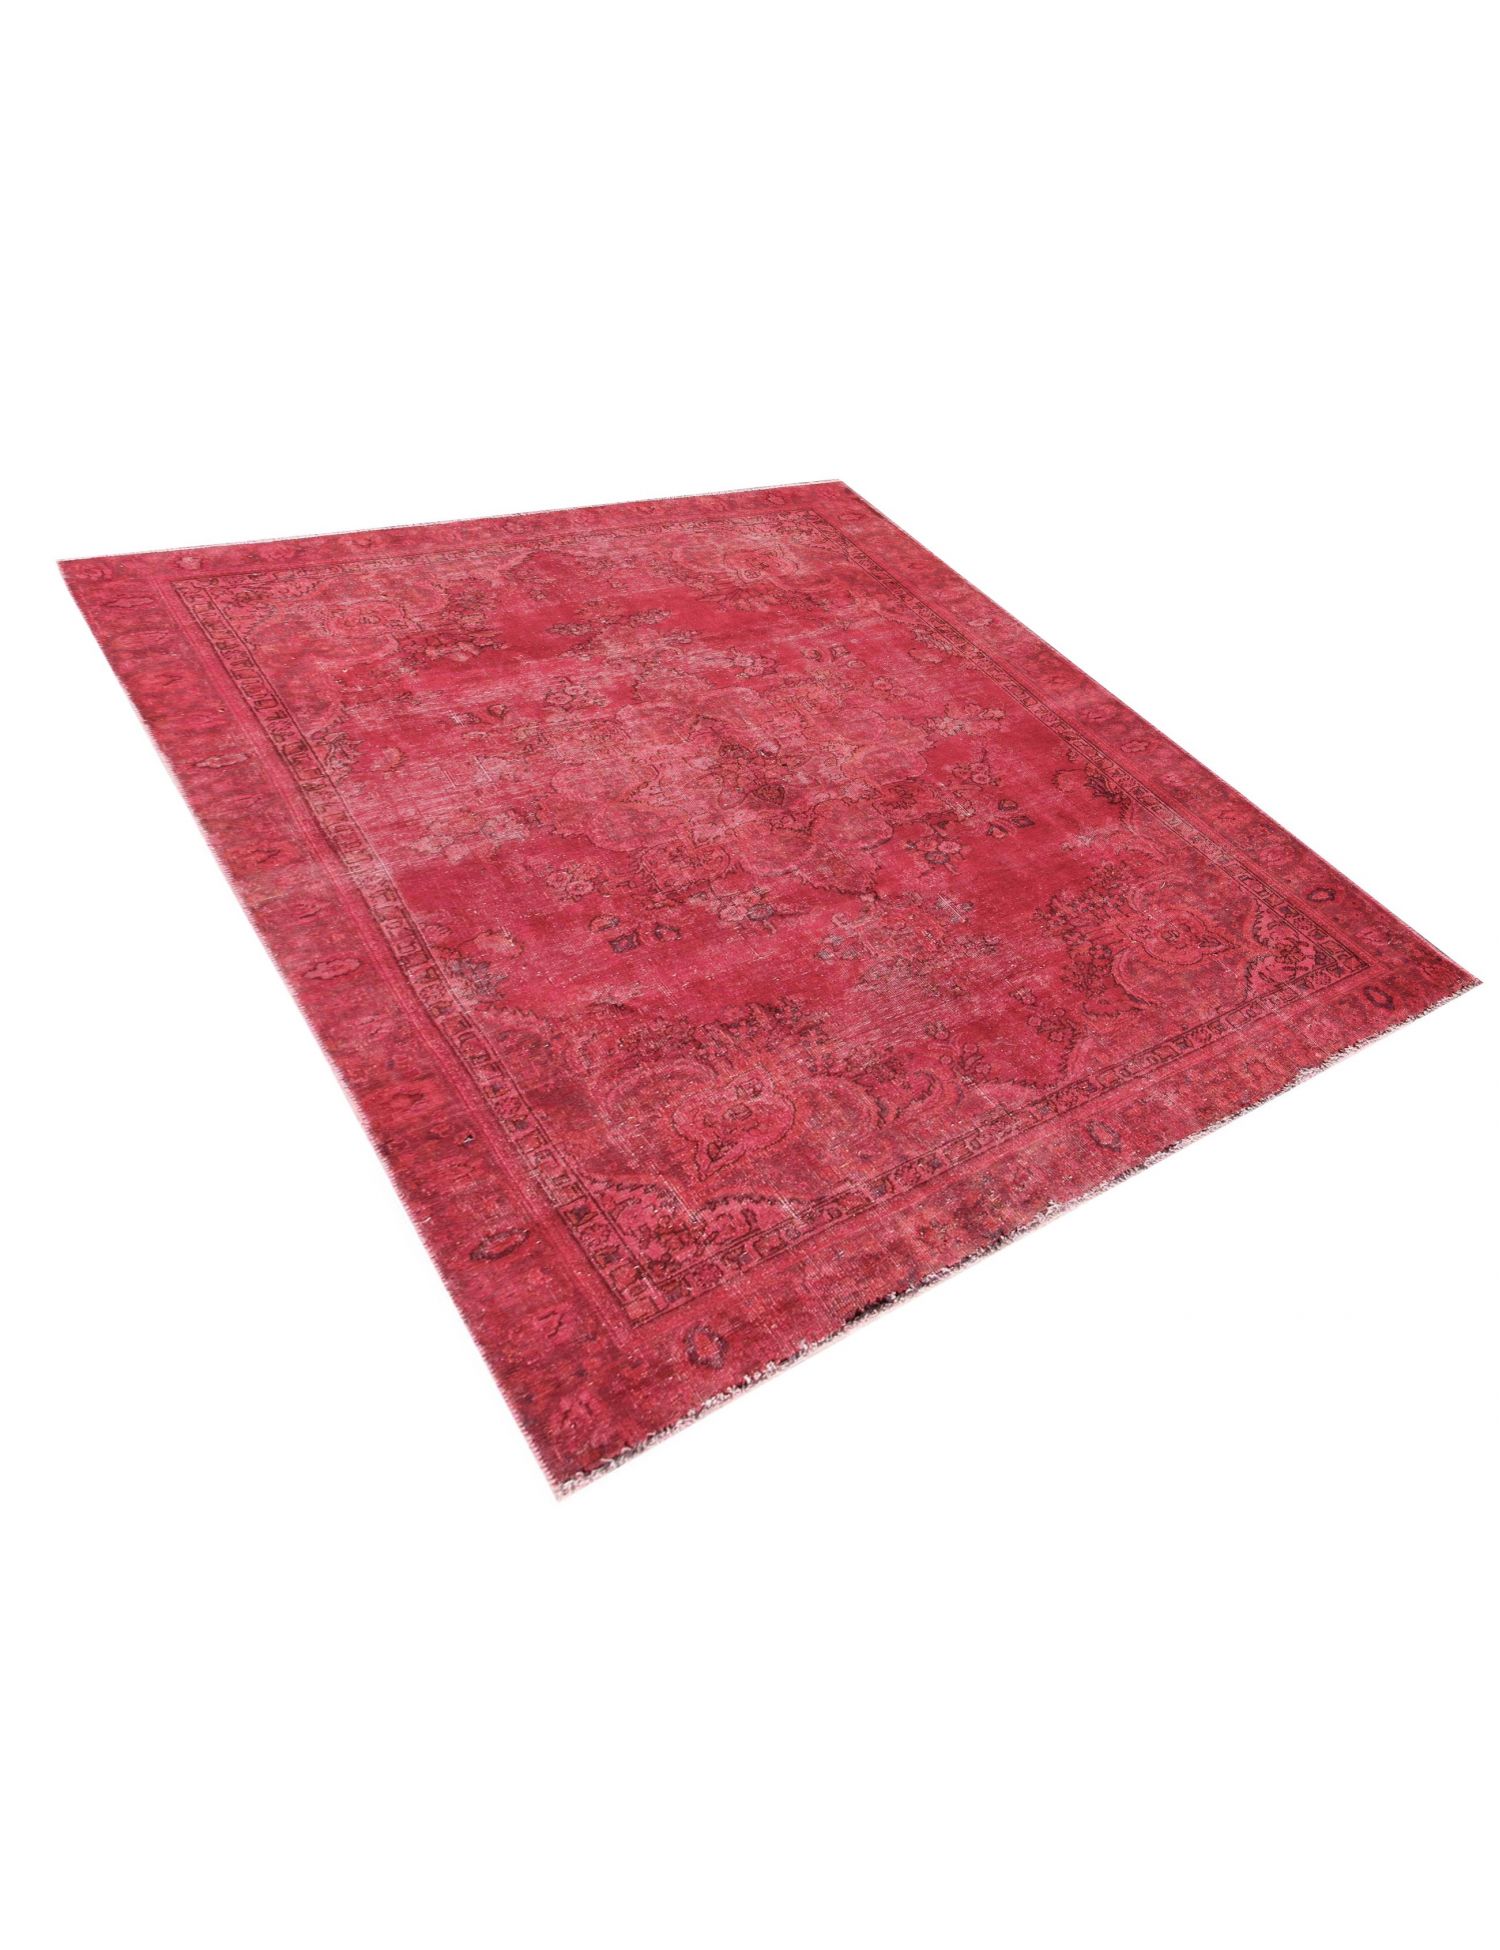 Persischer Vintage Teppich  rot <br/>260 x 182 cm